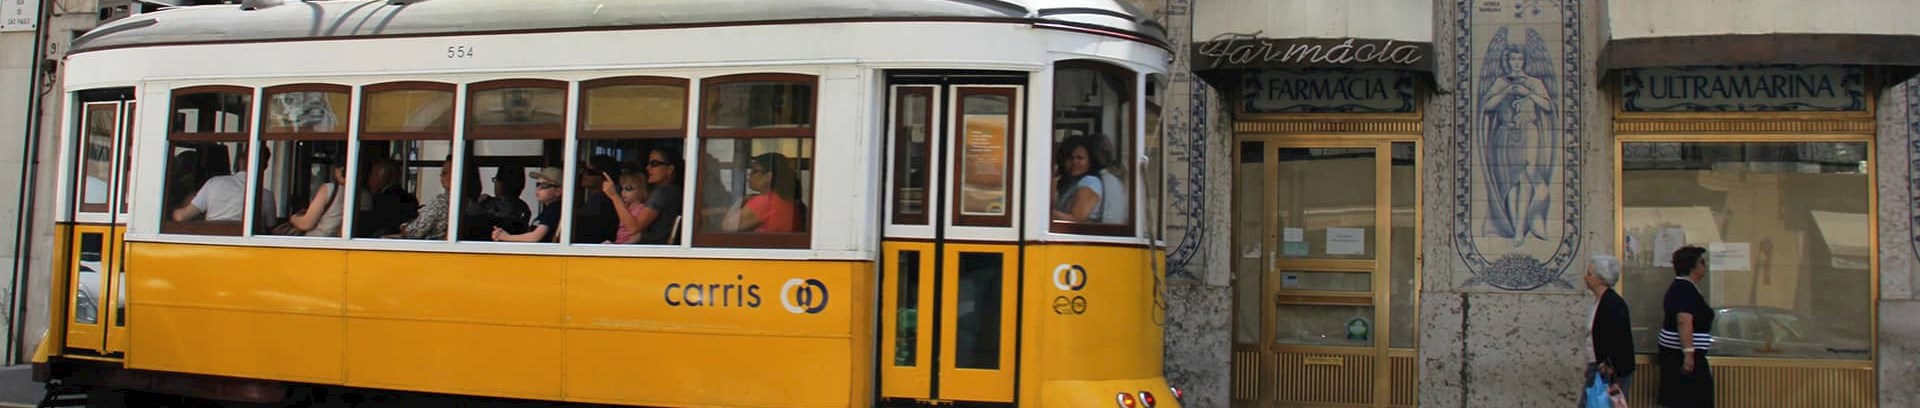 Billede af gul sporvogn i gaden i Portugal